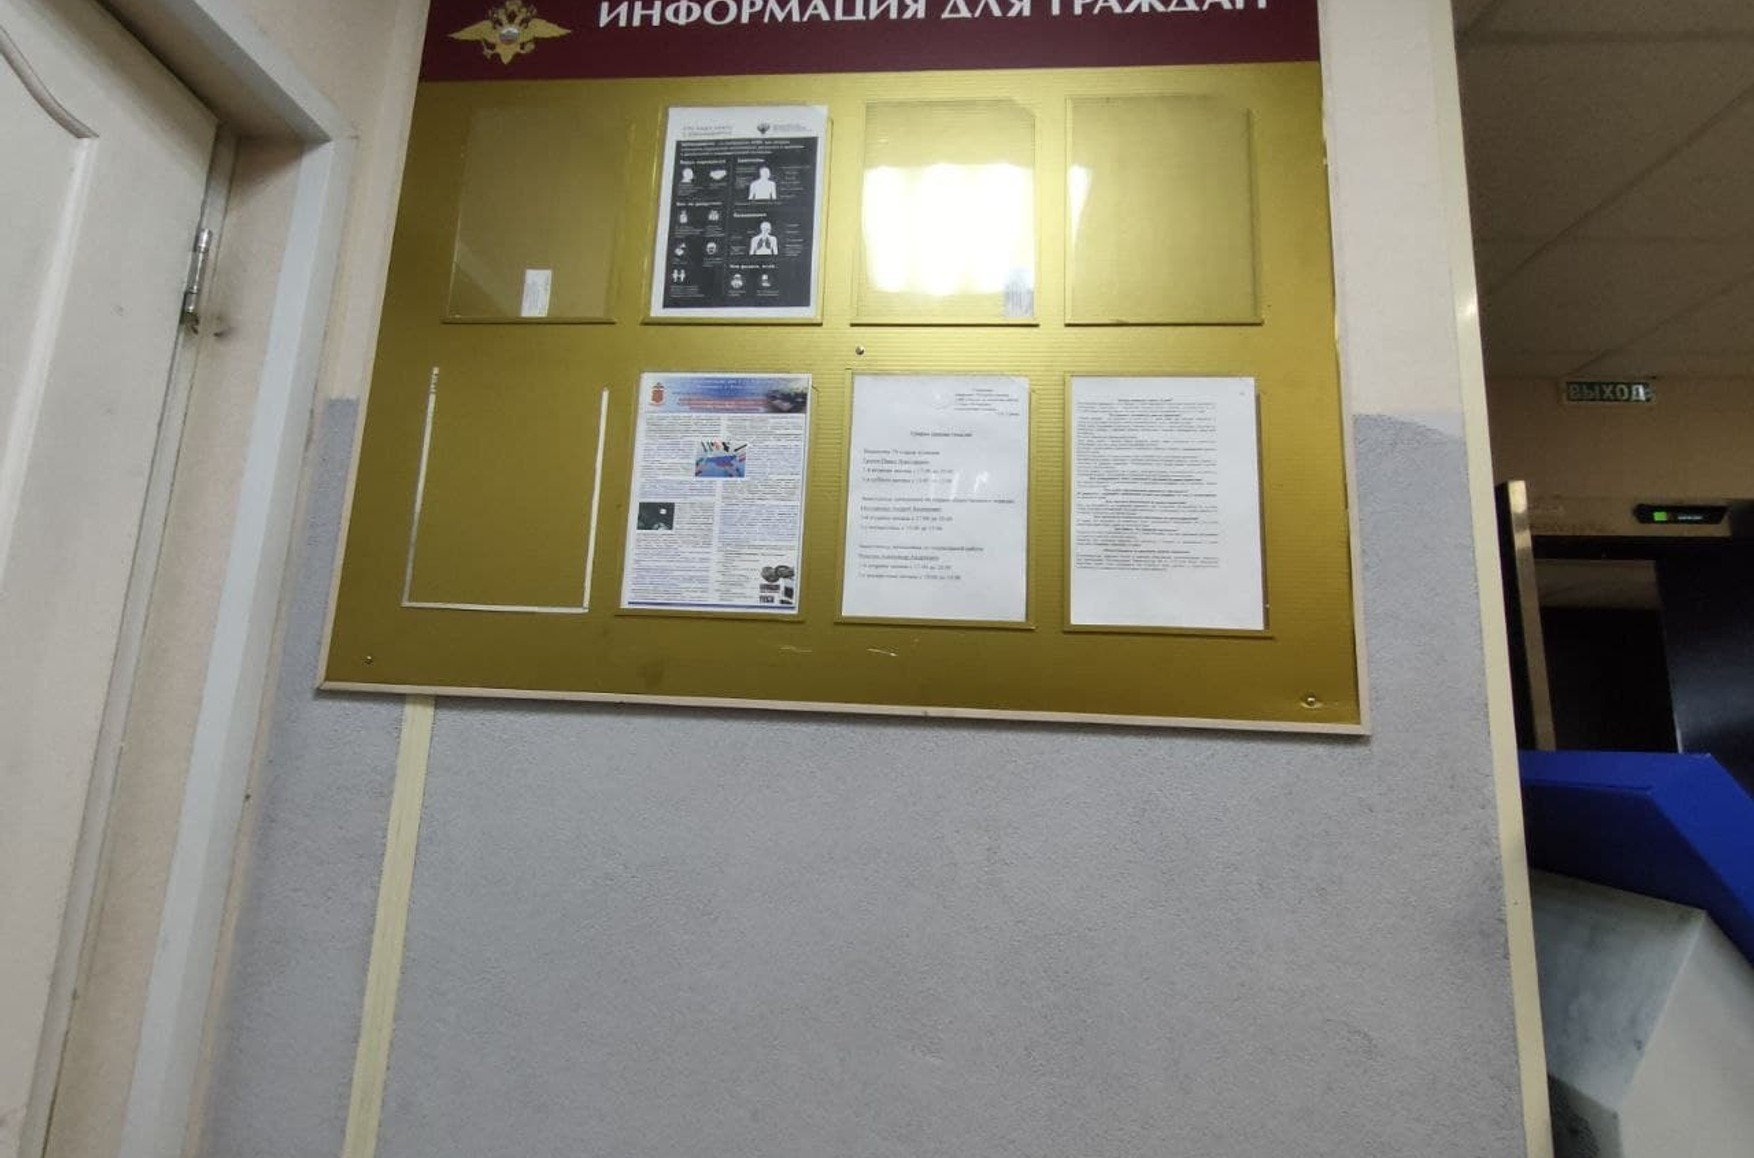 У відділі поліції Петербурга повісили плакат із закликом «тиснути русофобію», який нагадує нацистський малюнок